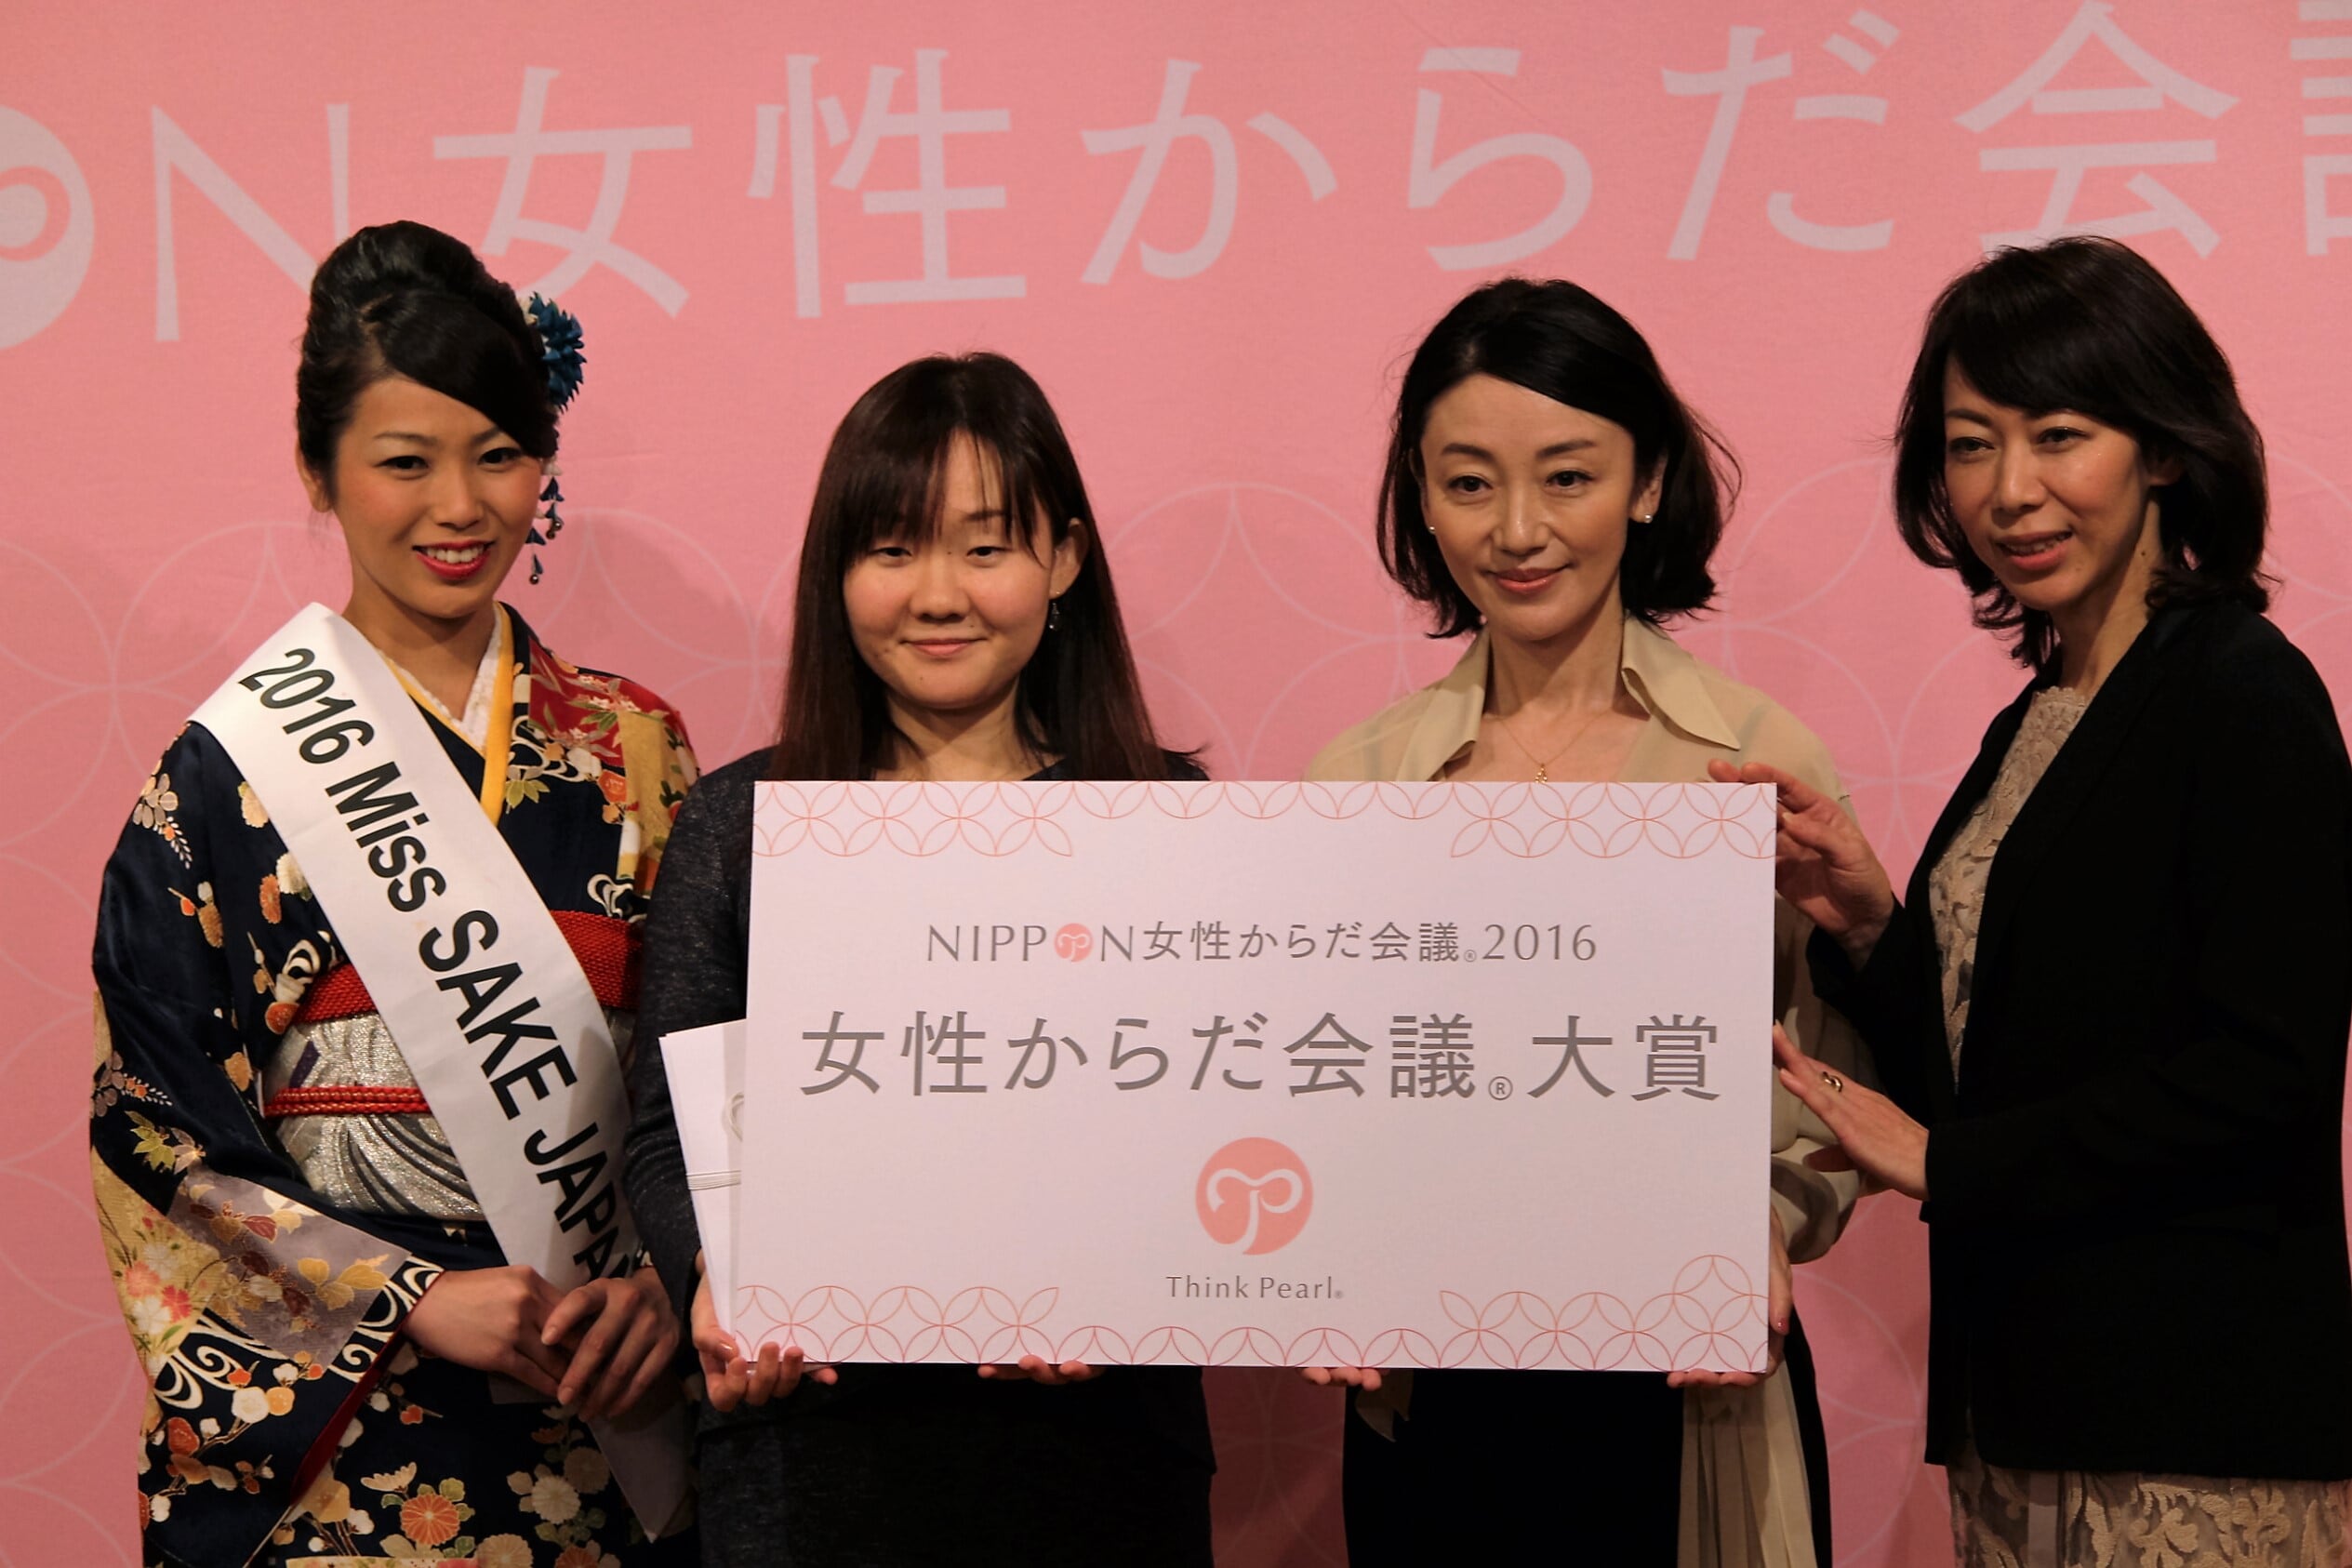 検診の大切さを再認識した日 Nippon女性からだ会議 16 記事詳細 Infoseekニュース